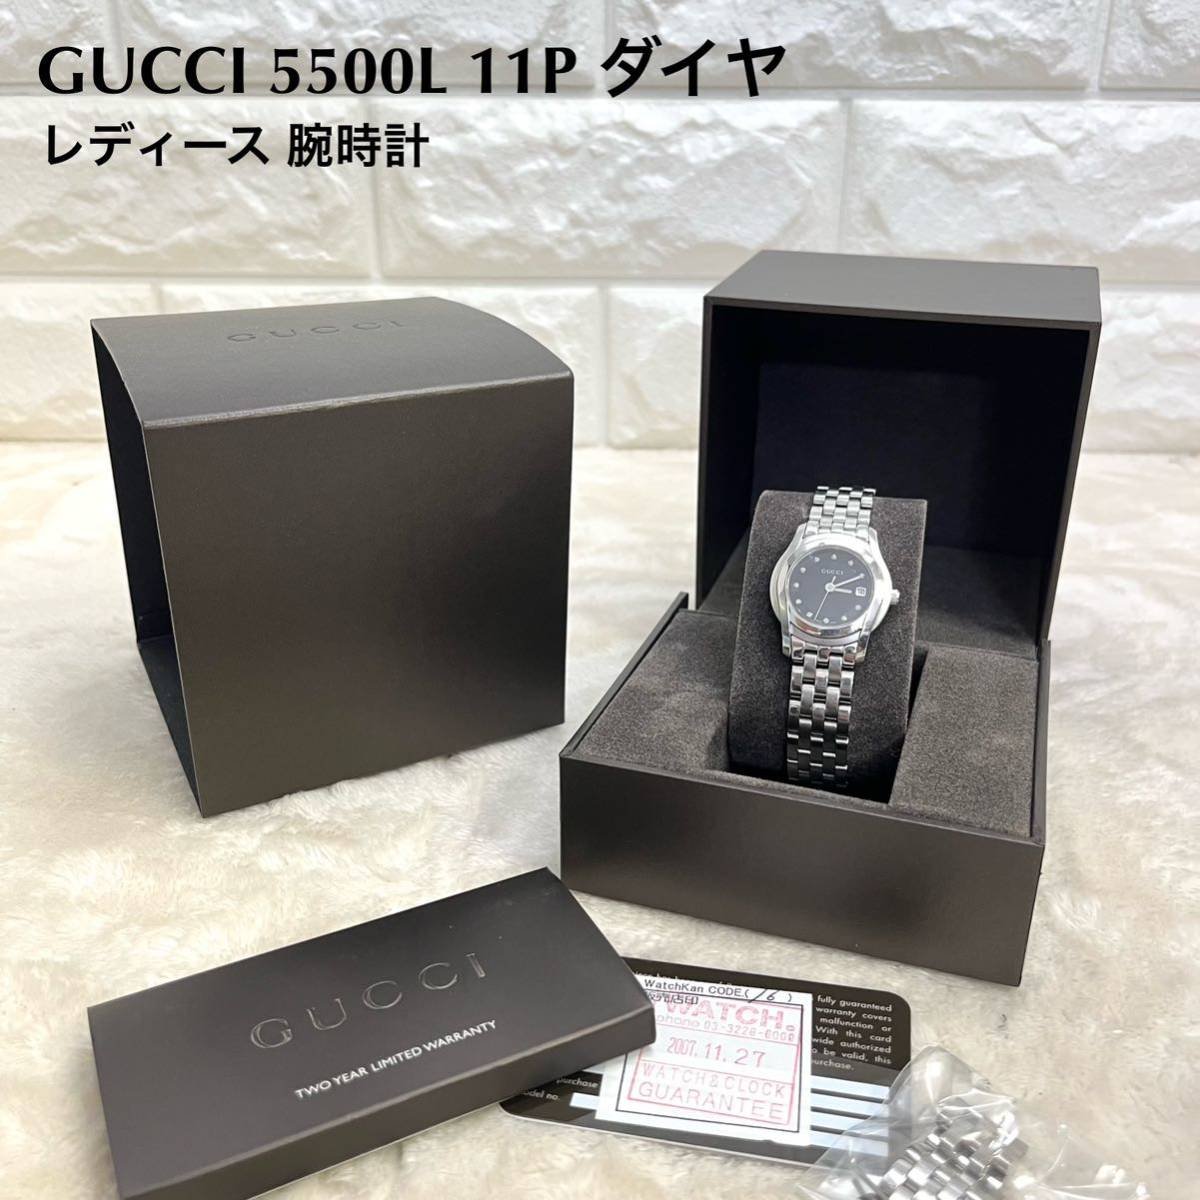 正規取扱店】 グッチ GUCCI レディース ダイヤモンド 11P 腕時計 5500L